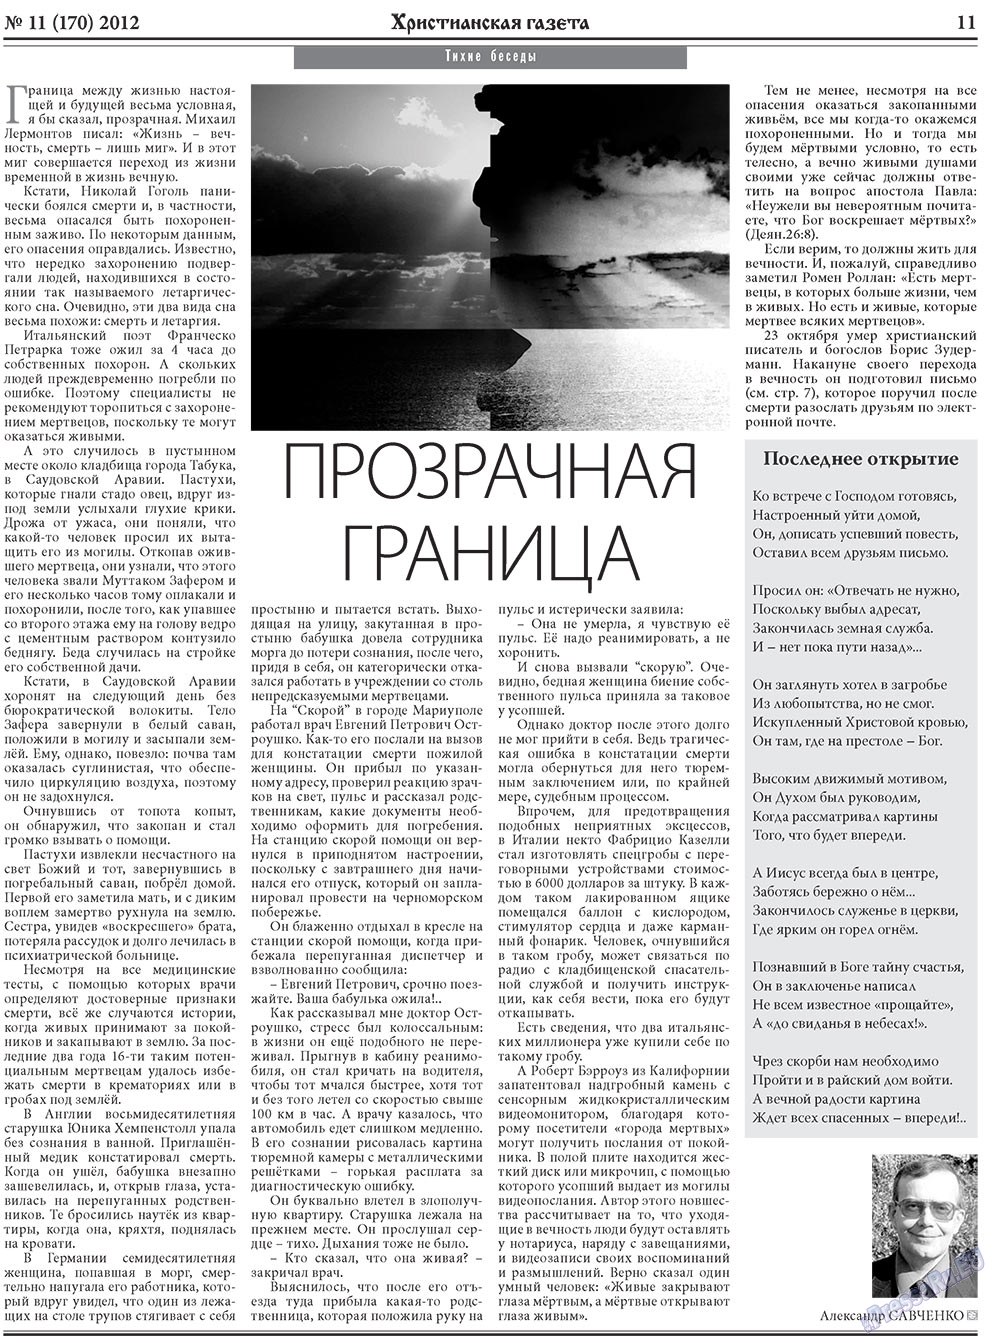 Христианская газета, газета. 2012 №11 стр.11